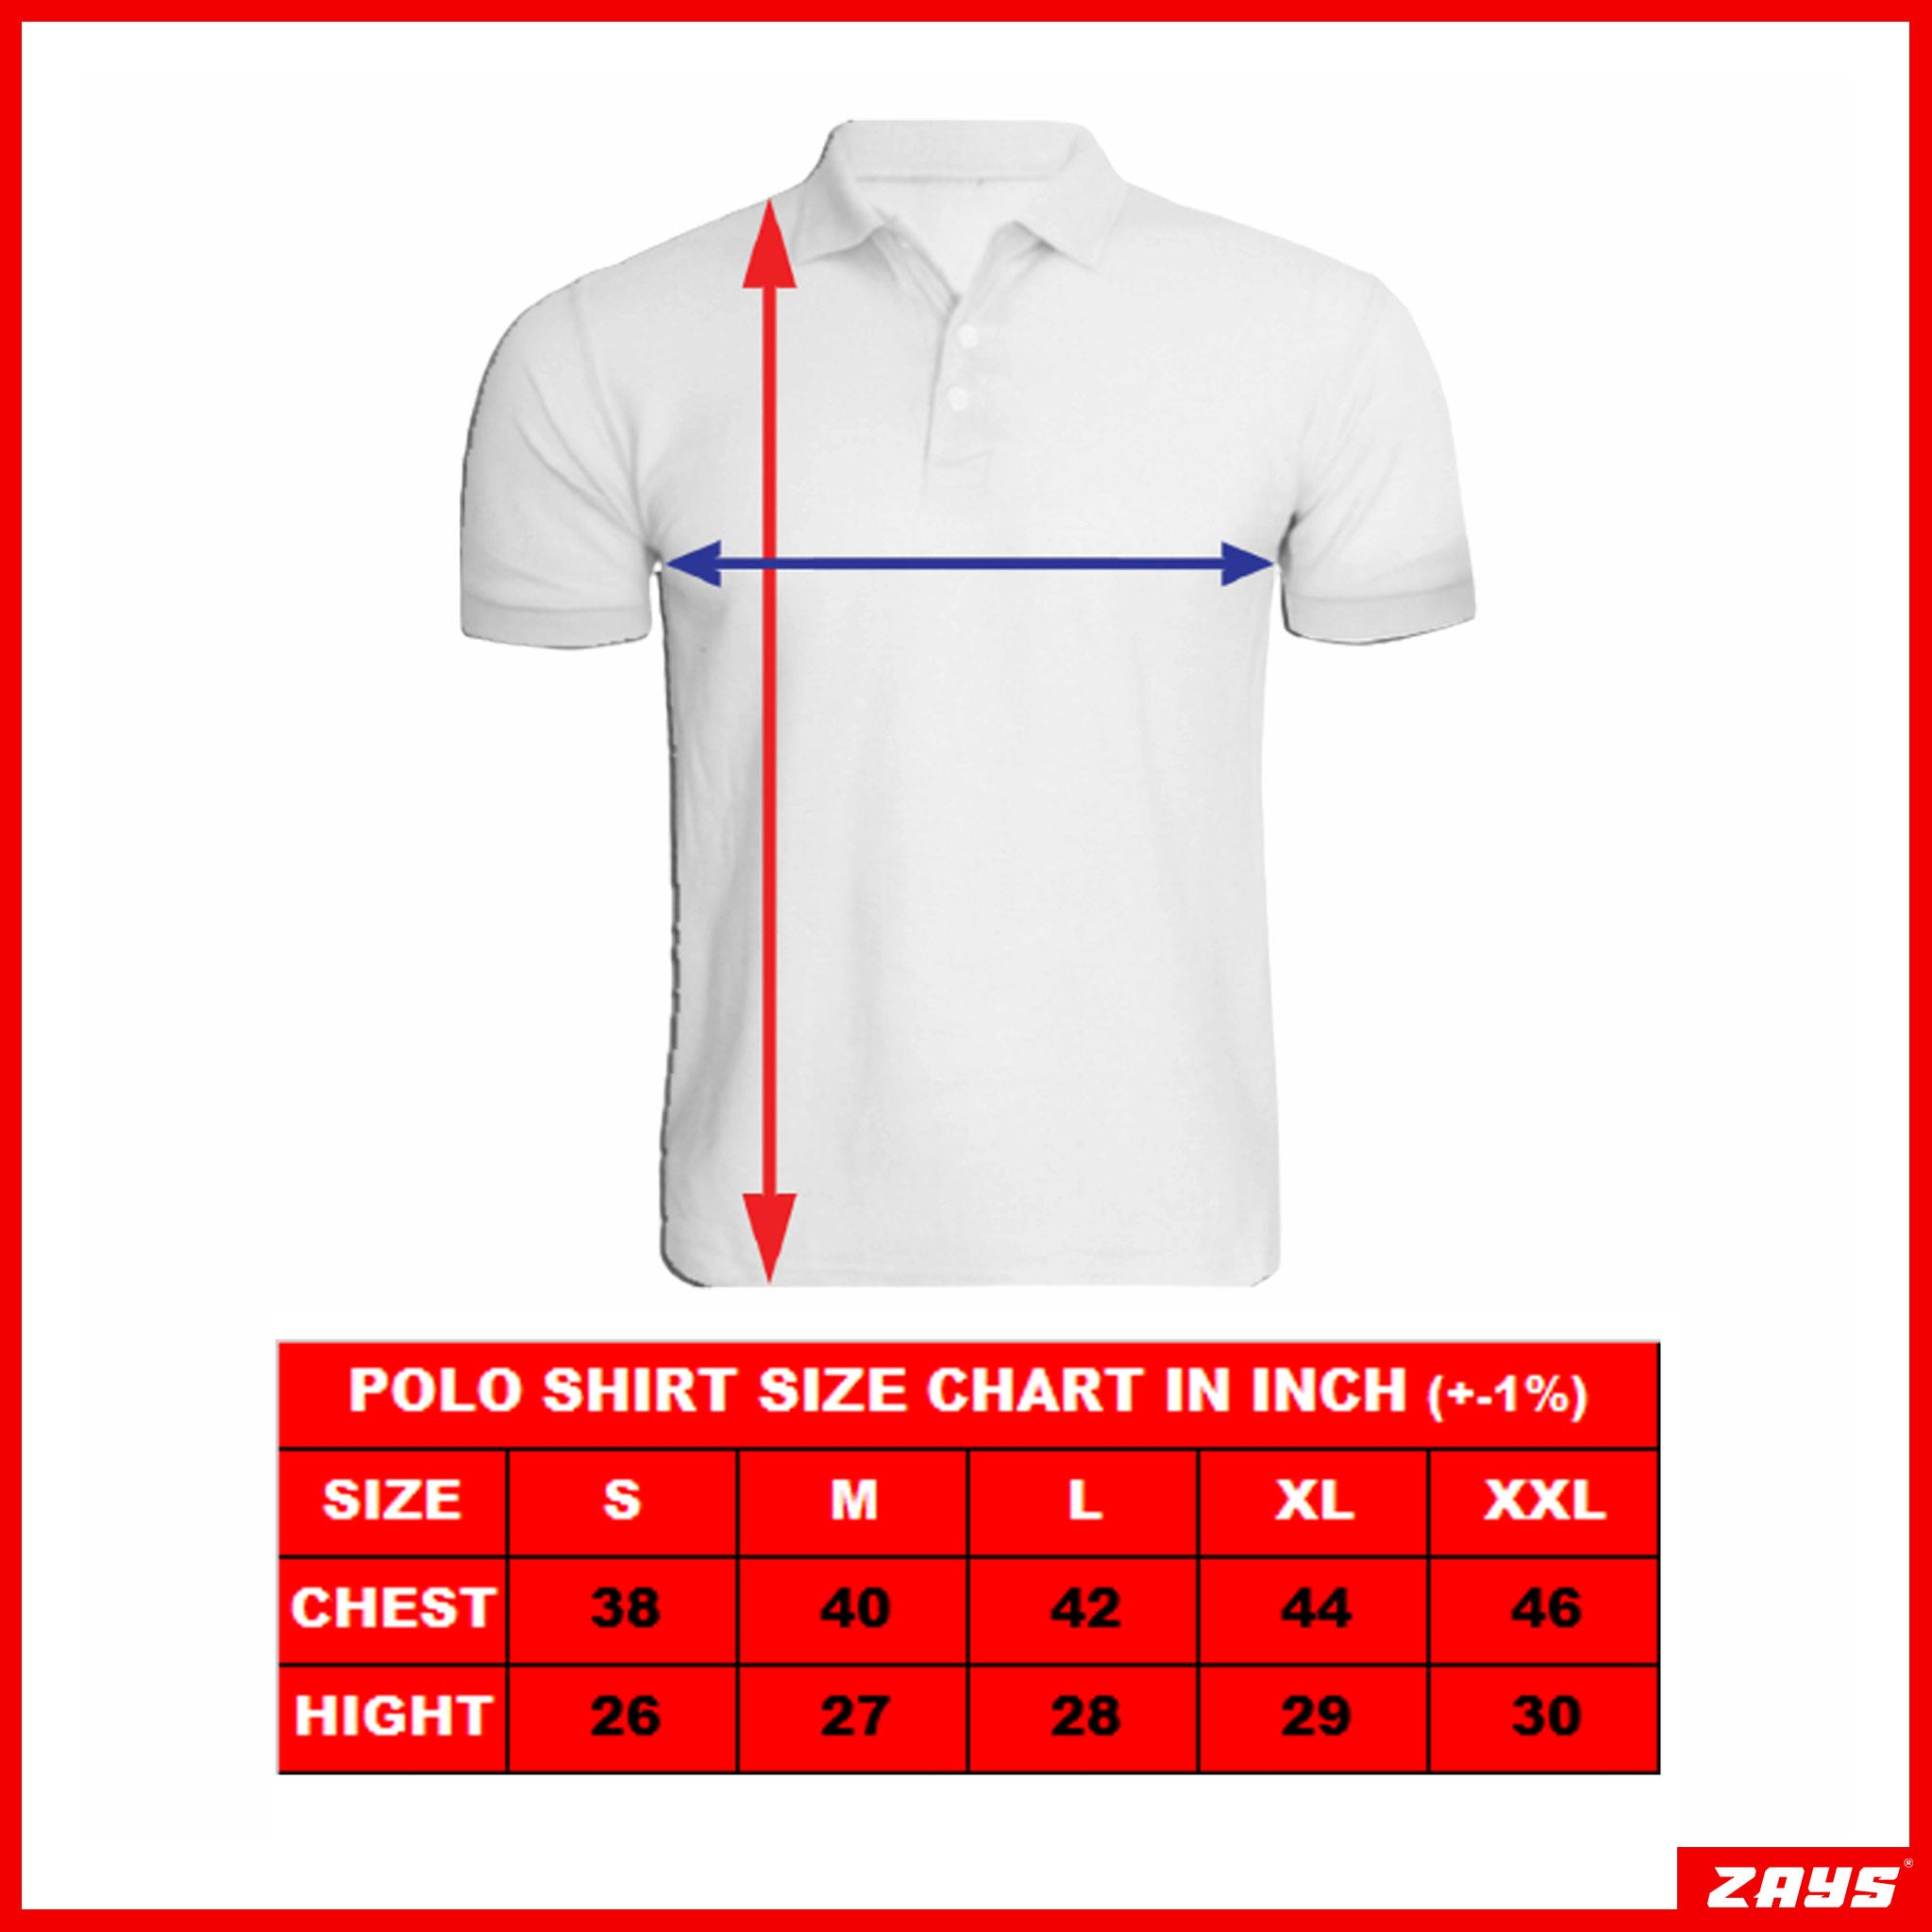 Imported Super Premium Cotton Polo Shirt For Men (SC03) - Blue